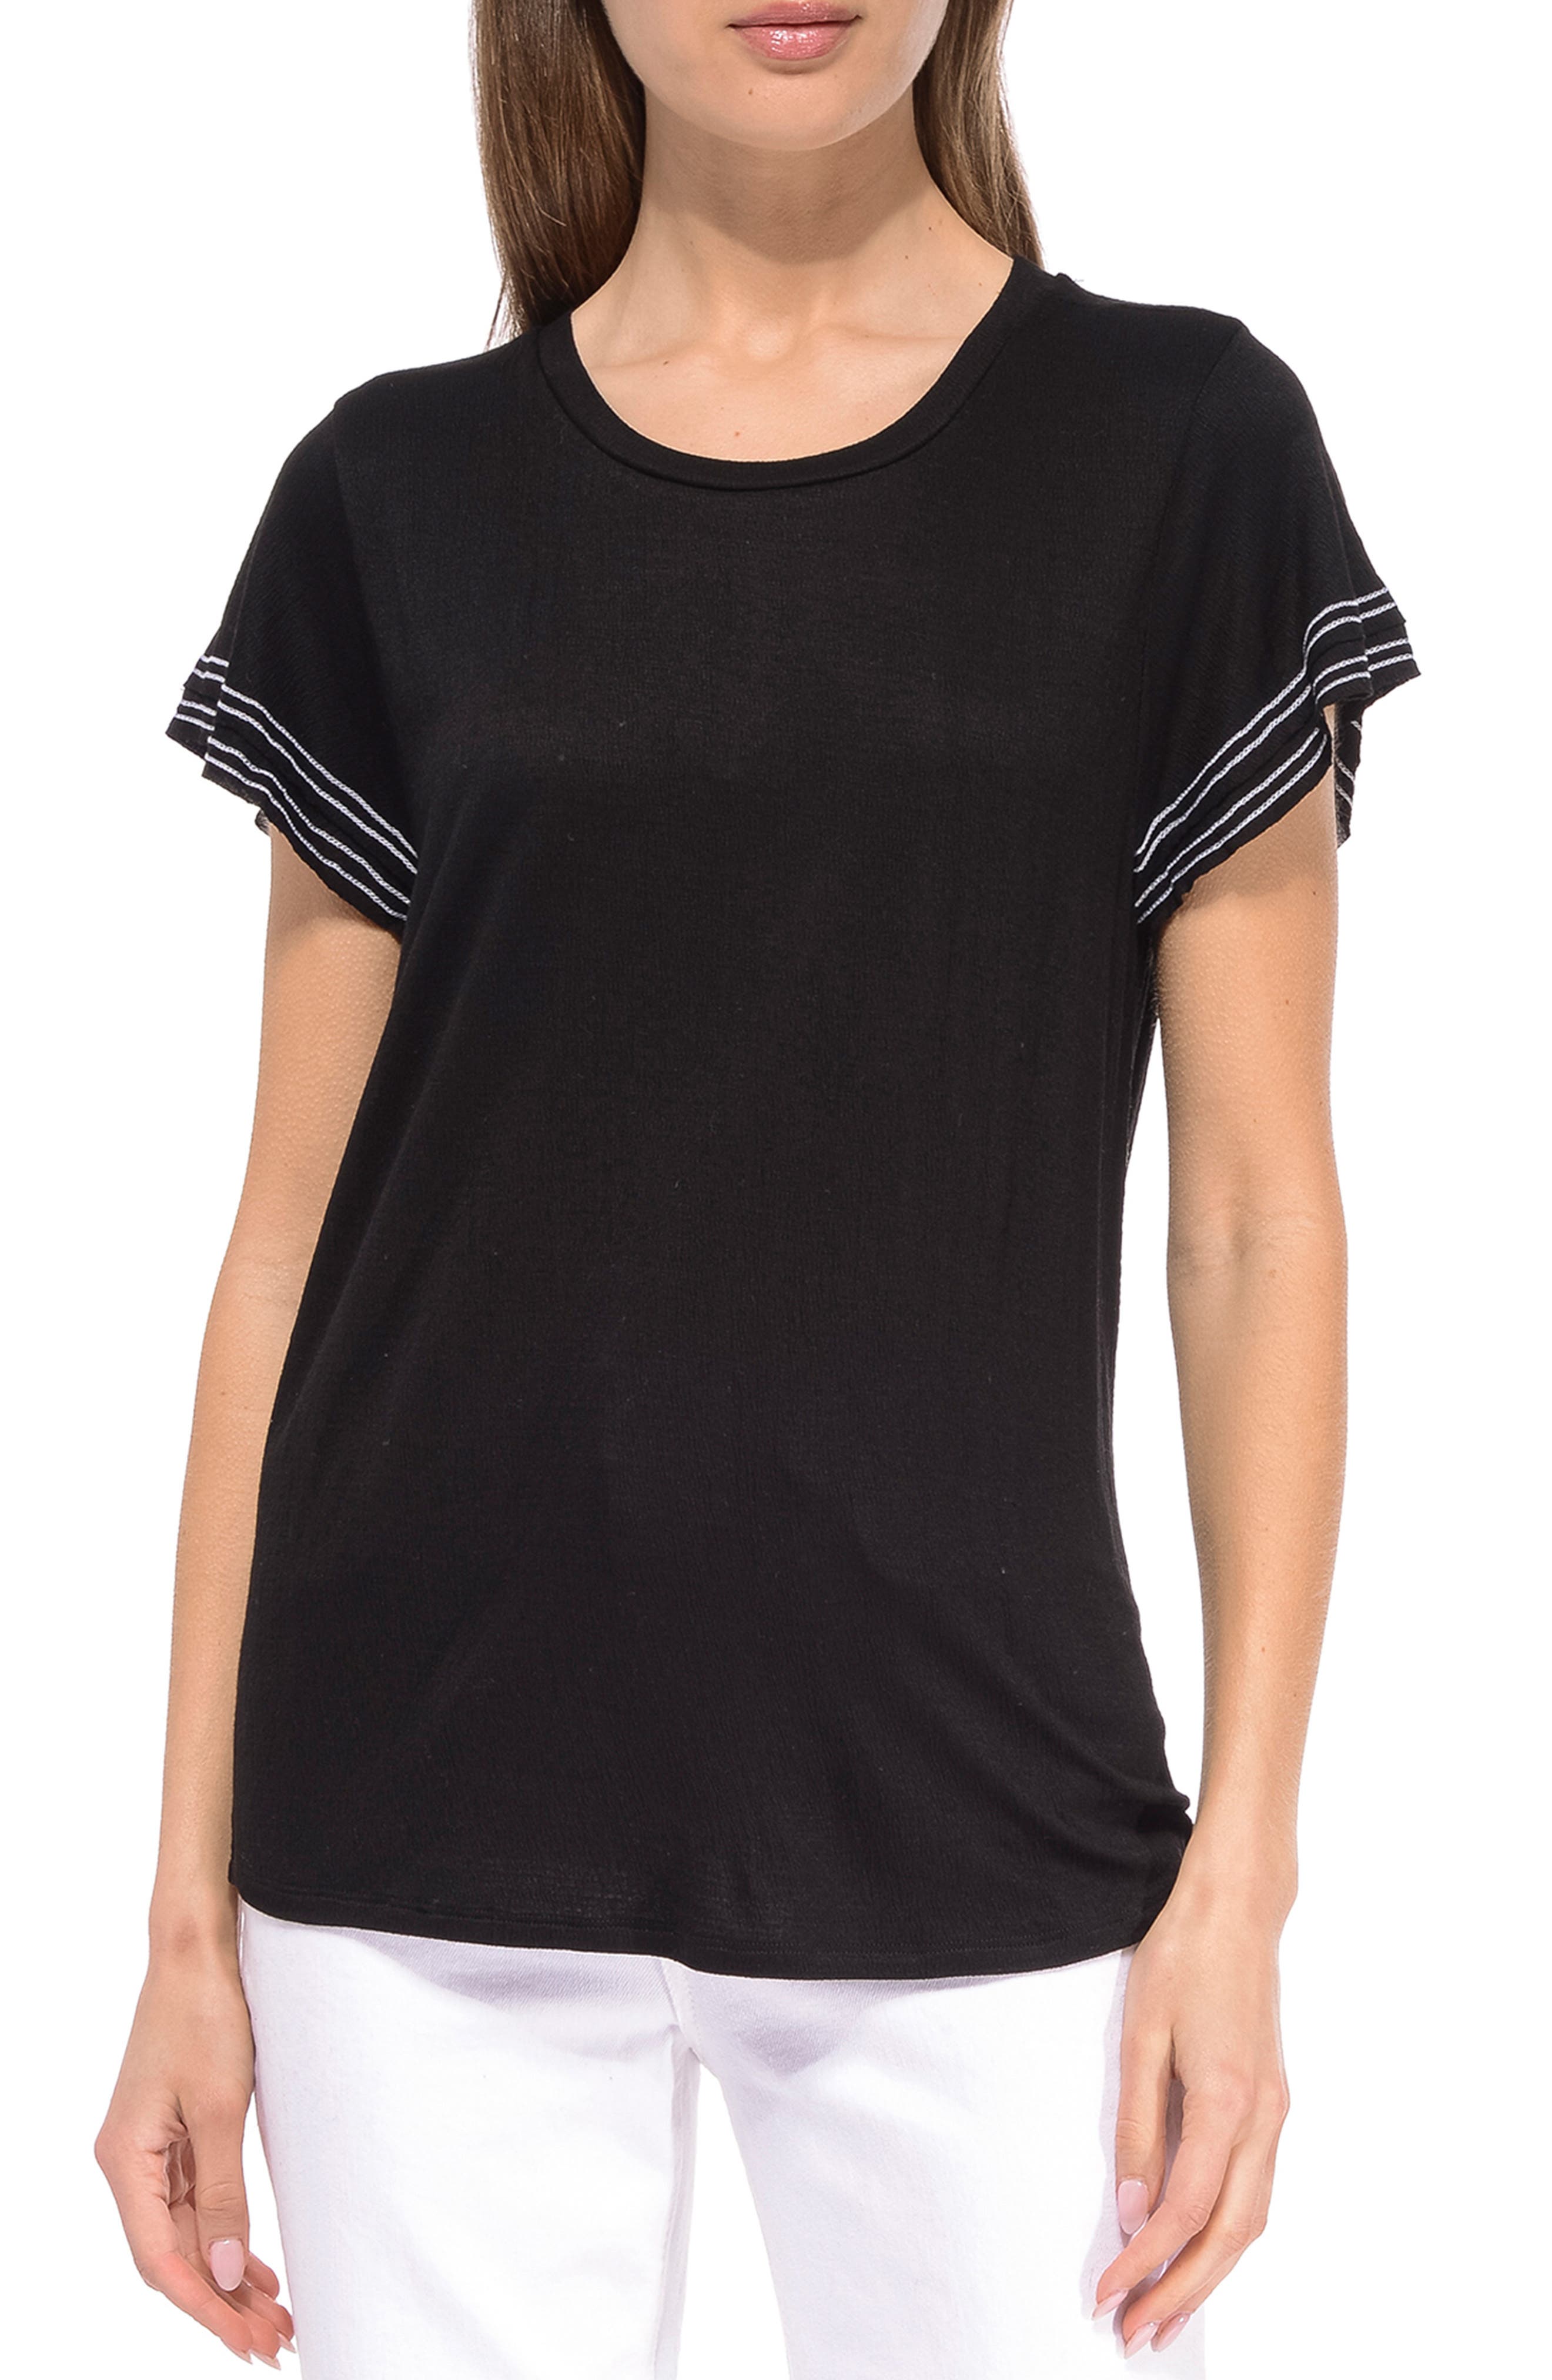 Plaid Contrast T-Shirt DEEP Black Small I.n.c